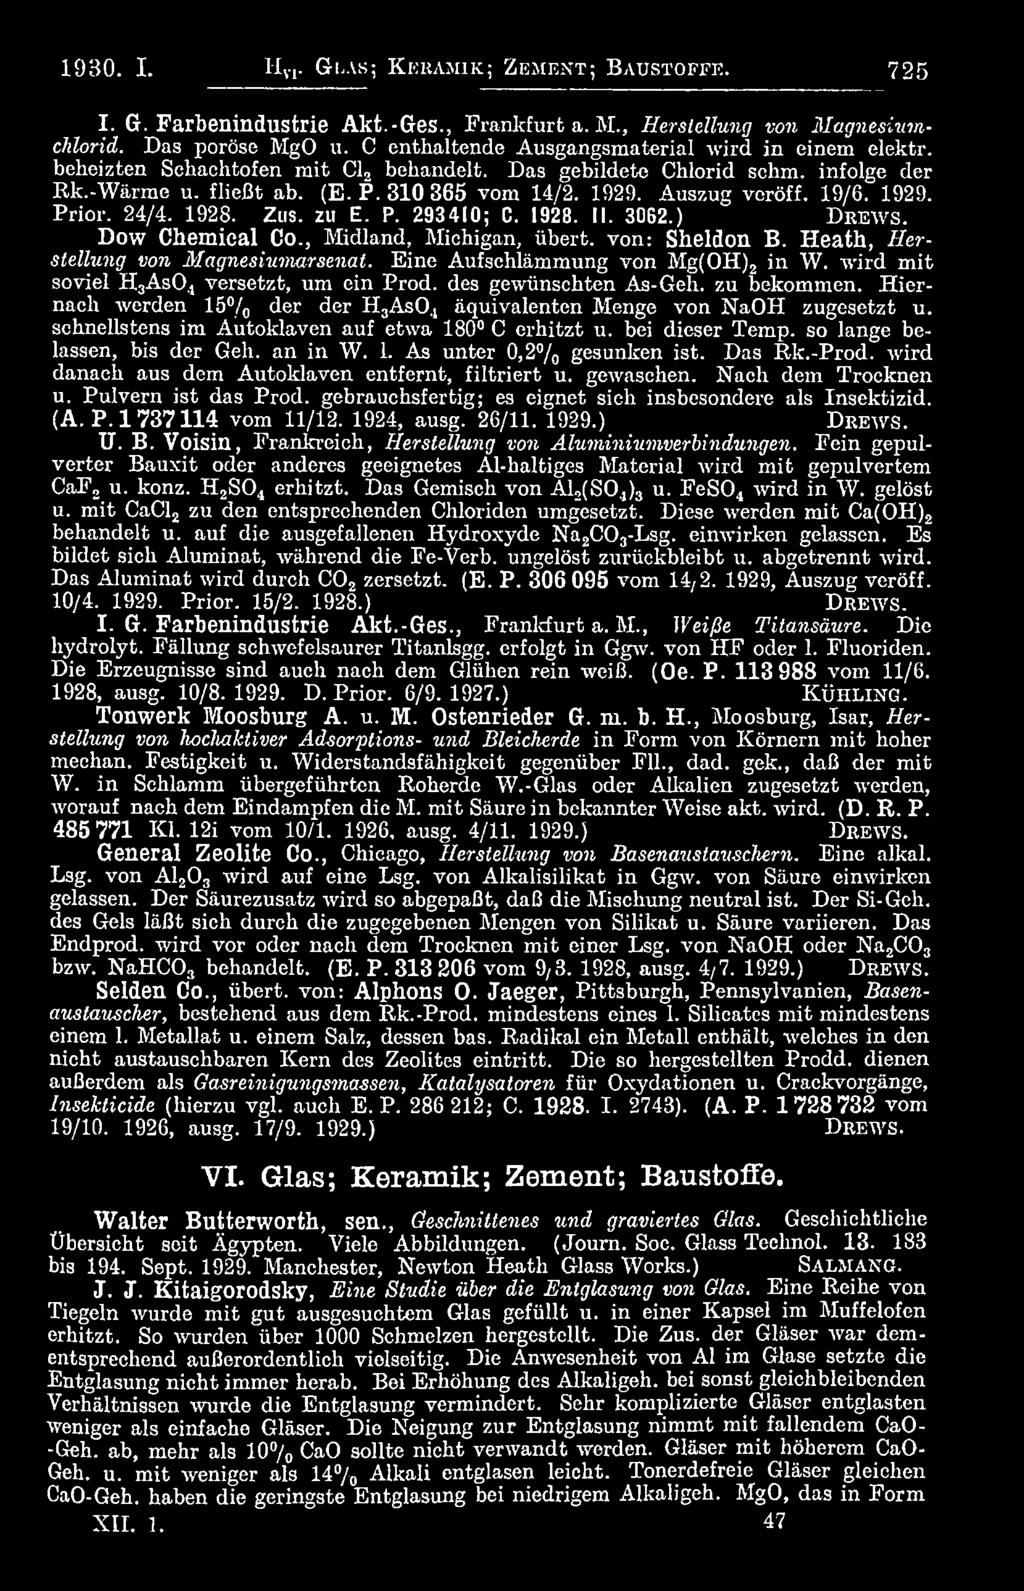 Auszug veröff. 19/6. 1929. Prior. 24/4. 1928. Z us. zu E. P. 293410; C. 1928. II. 3062.) D re w s. Dow Chemical Co., Midland, Michigan, übert. von: Sheldon B. Heath, Herstellung von Magnesiumarsenat.